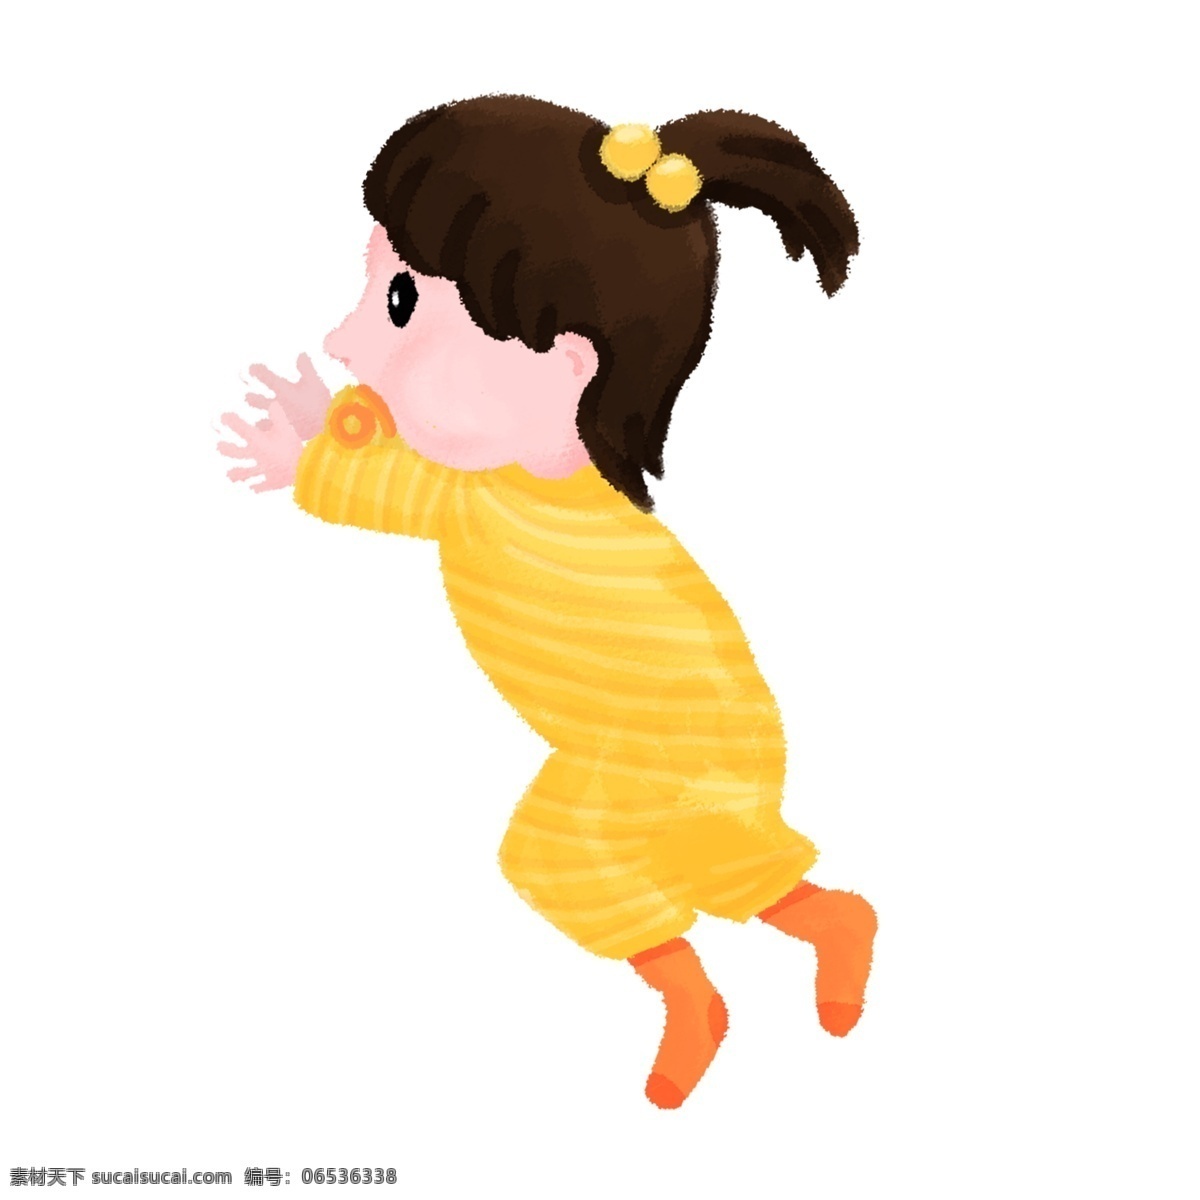 女婴 婴儿 可爱 侧 身穿 搭 手绘 插画 侧身 穿搭 奶嘴 安抚 连体衣 黄色 袜子 萌 baby